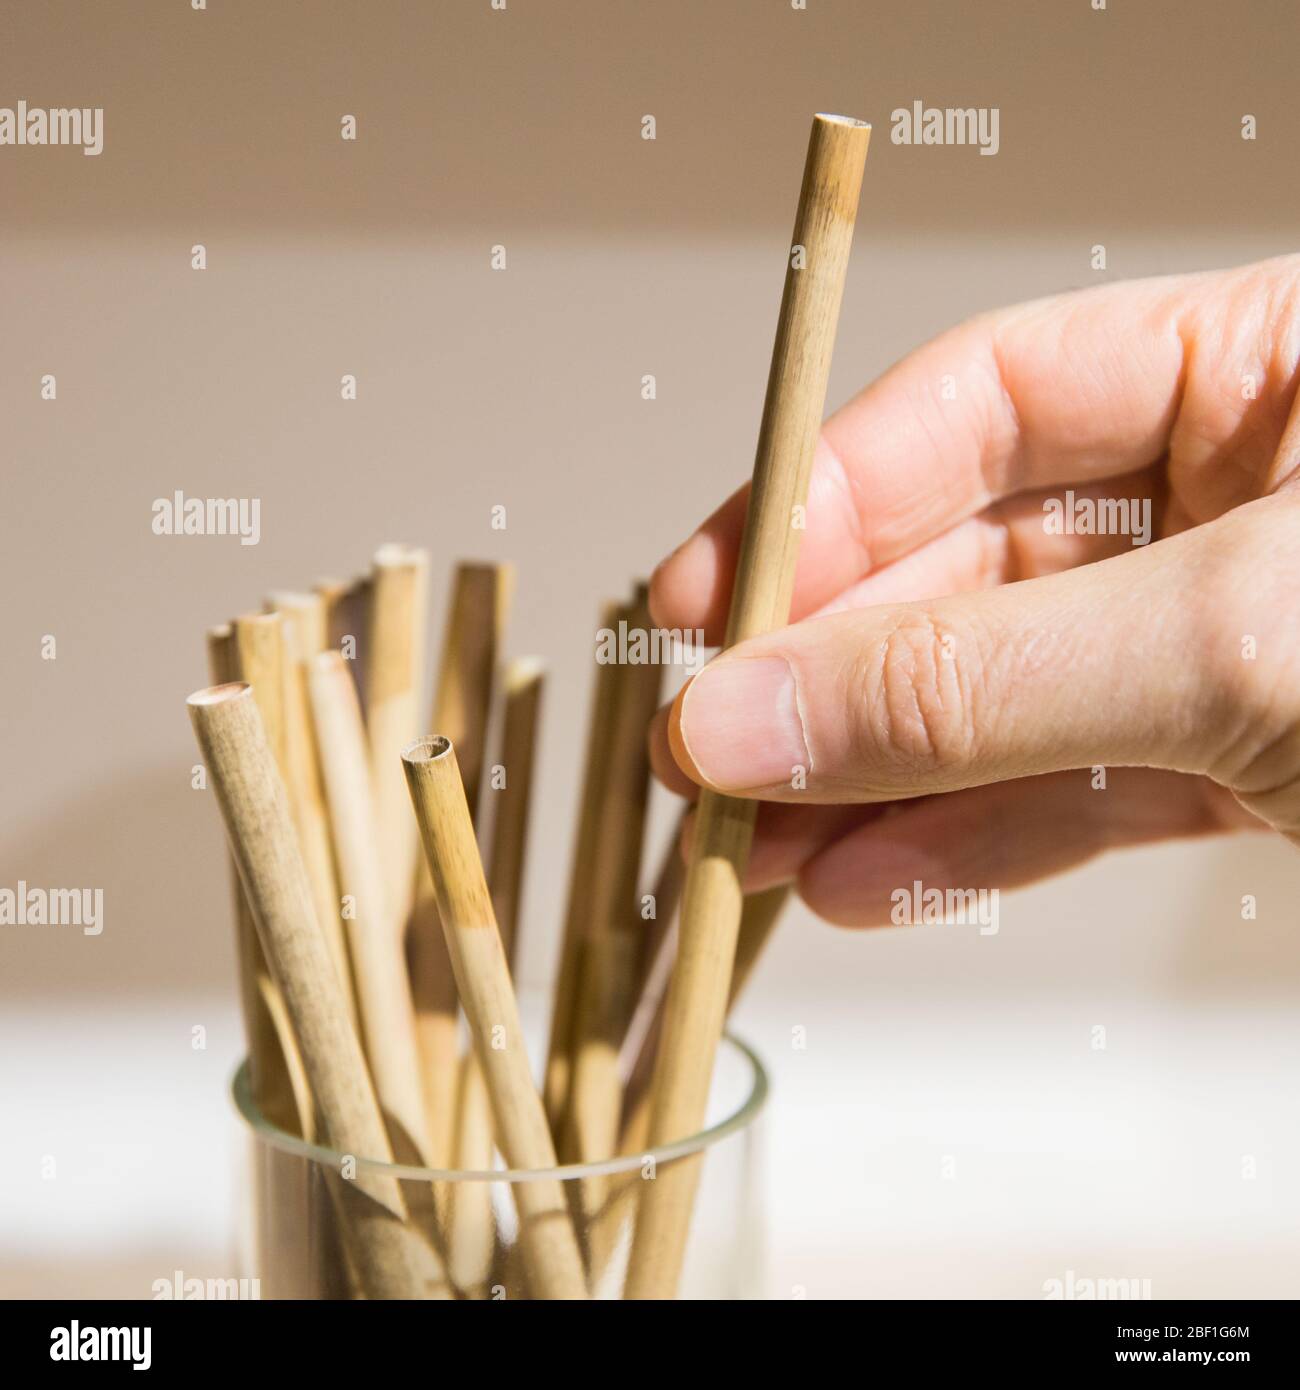 Austausch von Kunststoffhalmen. Mann Hand halten / berühren wiederverwendbare Stroh aus Bambus umweltfreundlich biologisch abbaubar, selektive weiche Fokus. Keine Verschwendung, keine Plasti Stockfoto